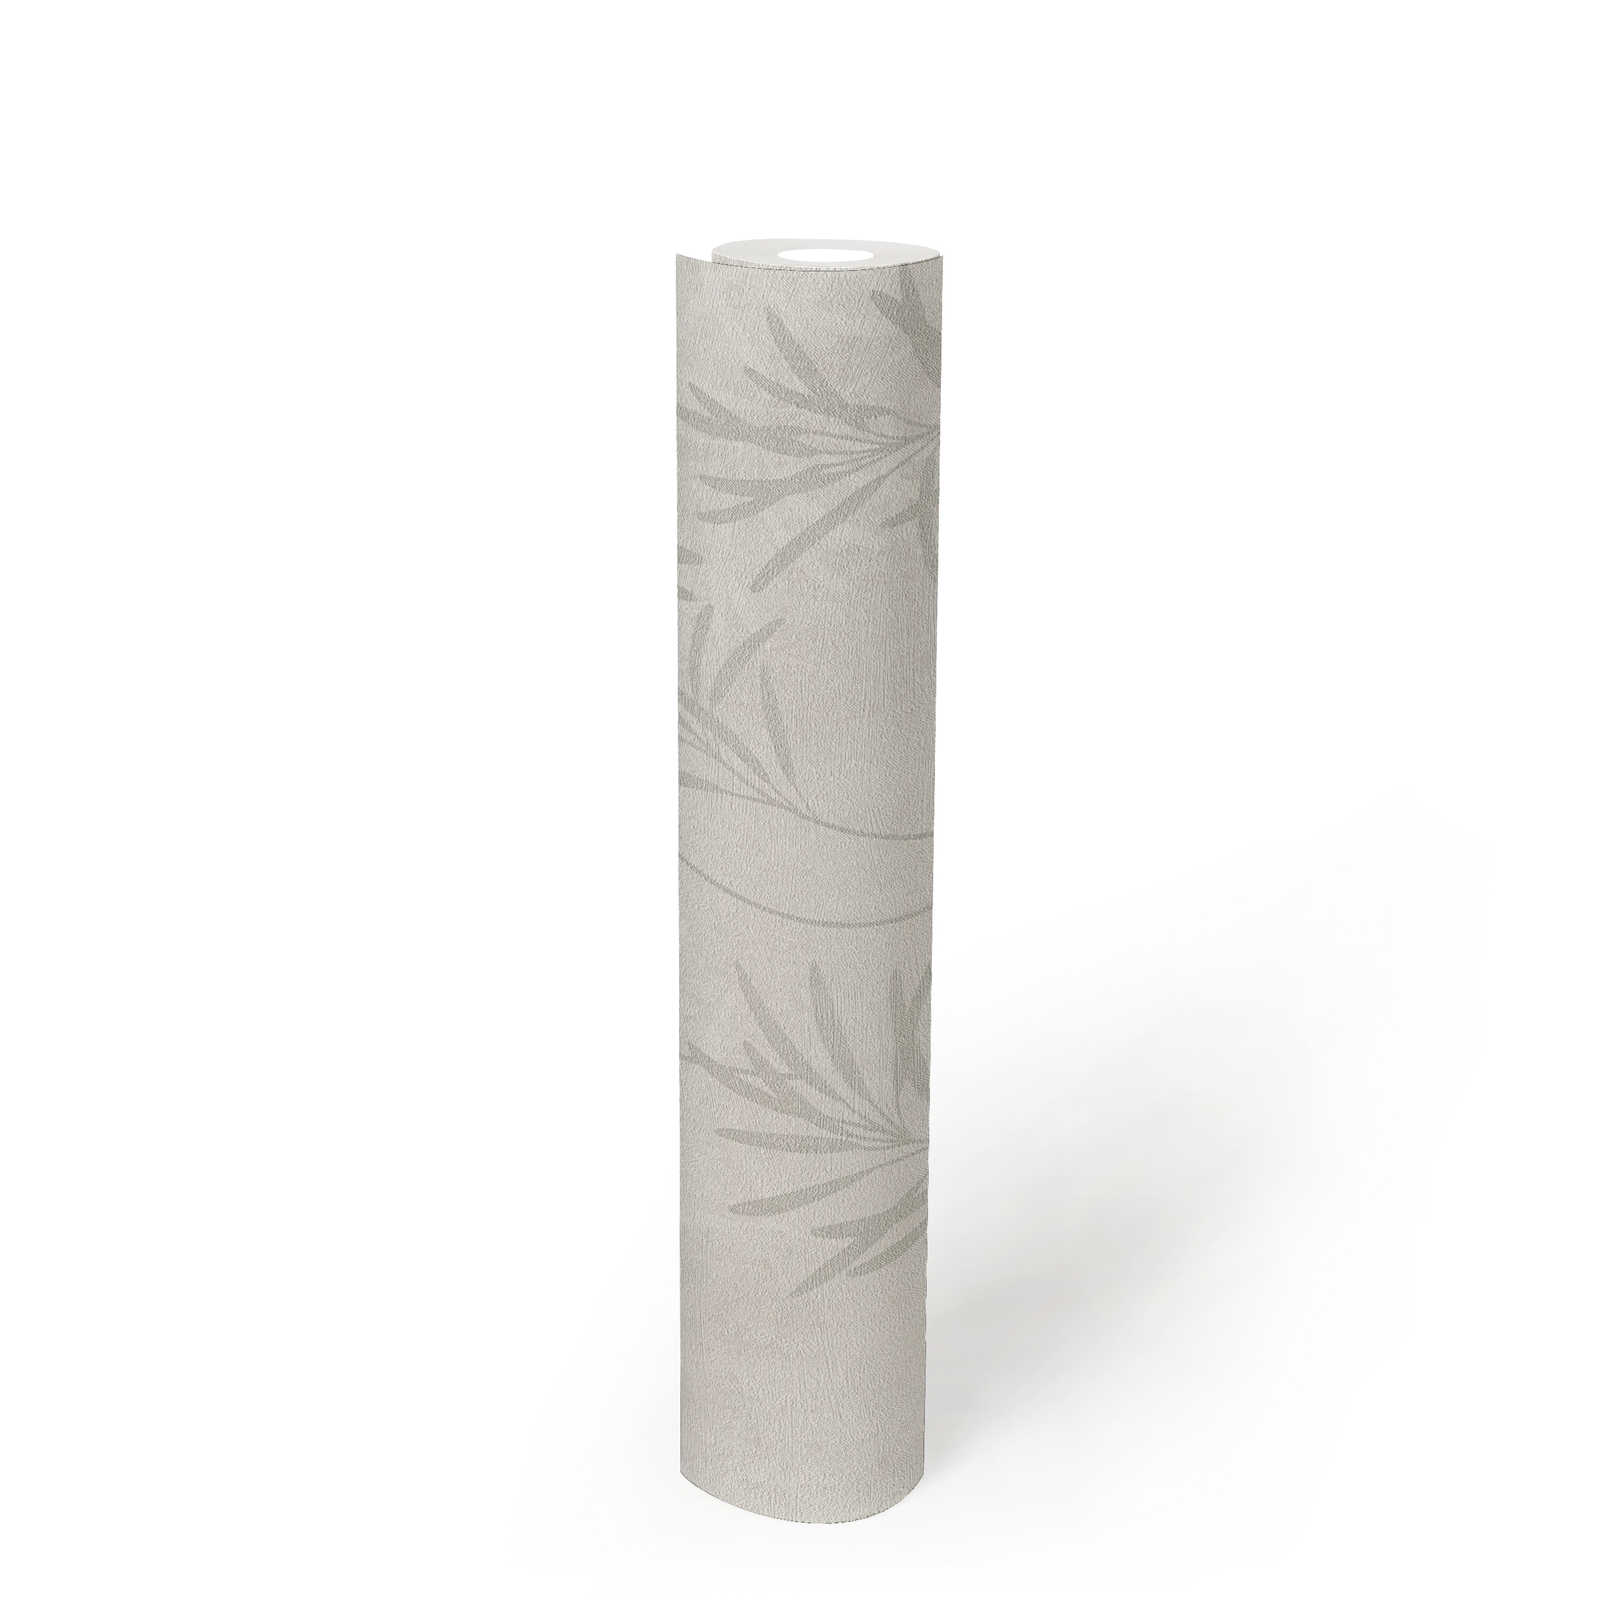             Papel pintado no tejido con motivos de hierba y estructura fina - blanco, gris, metálico
        